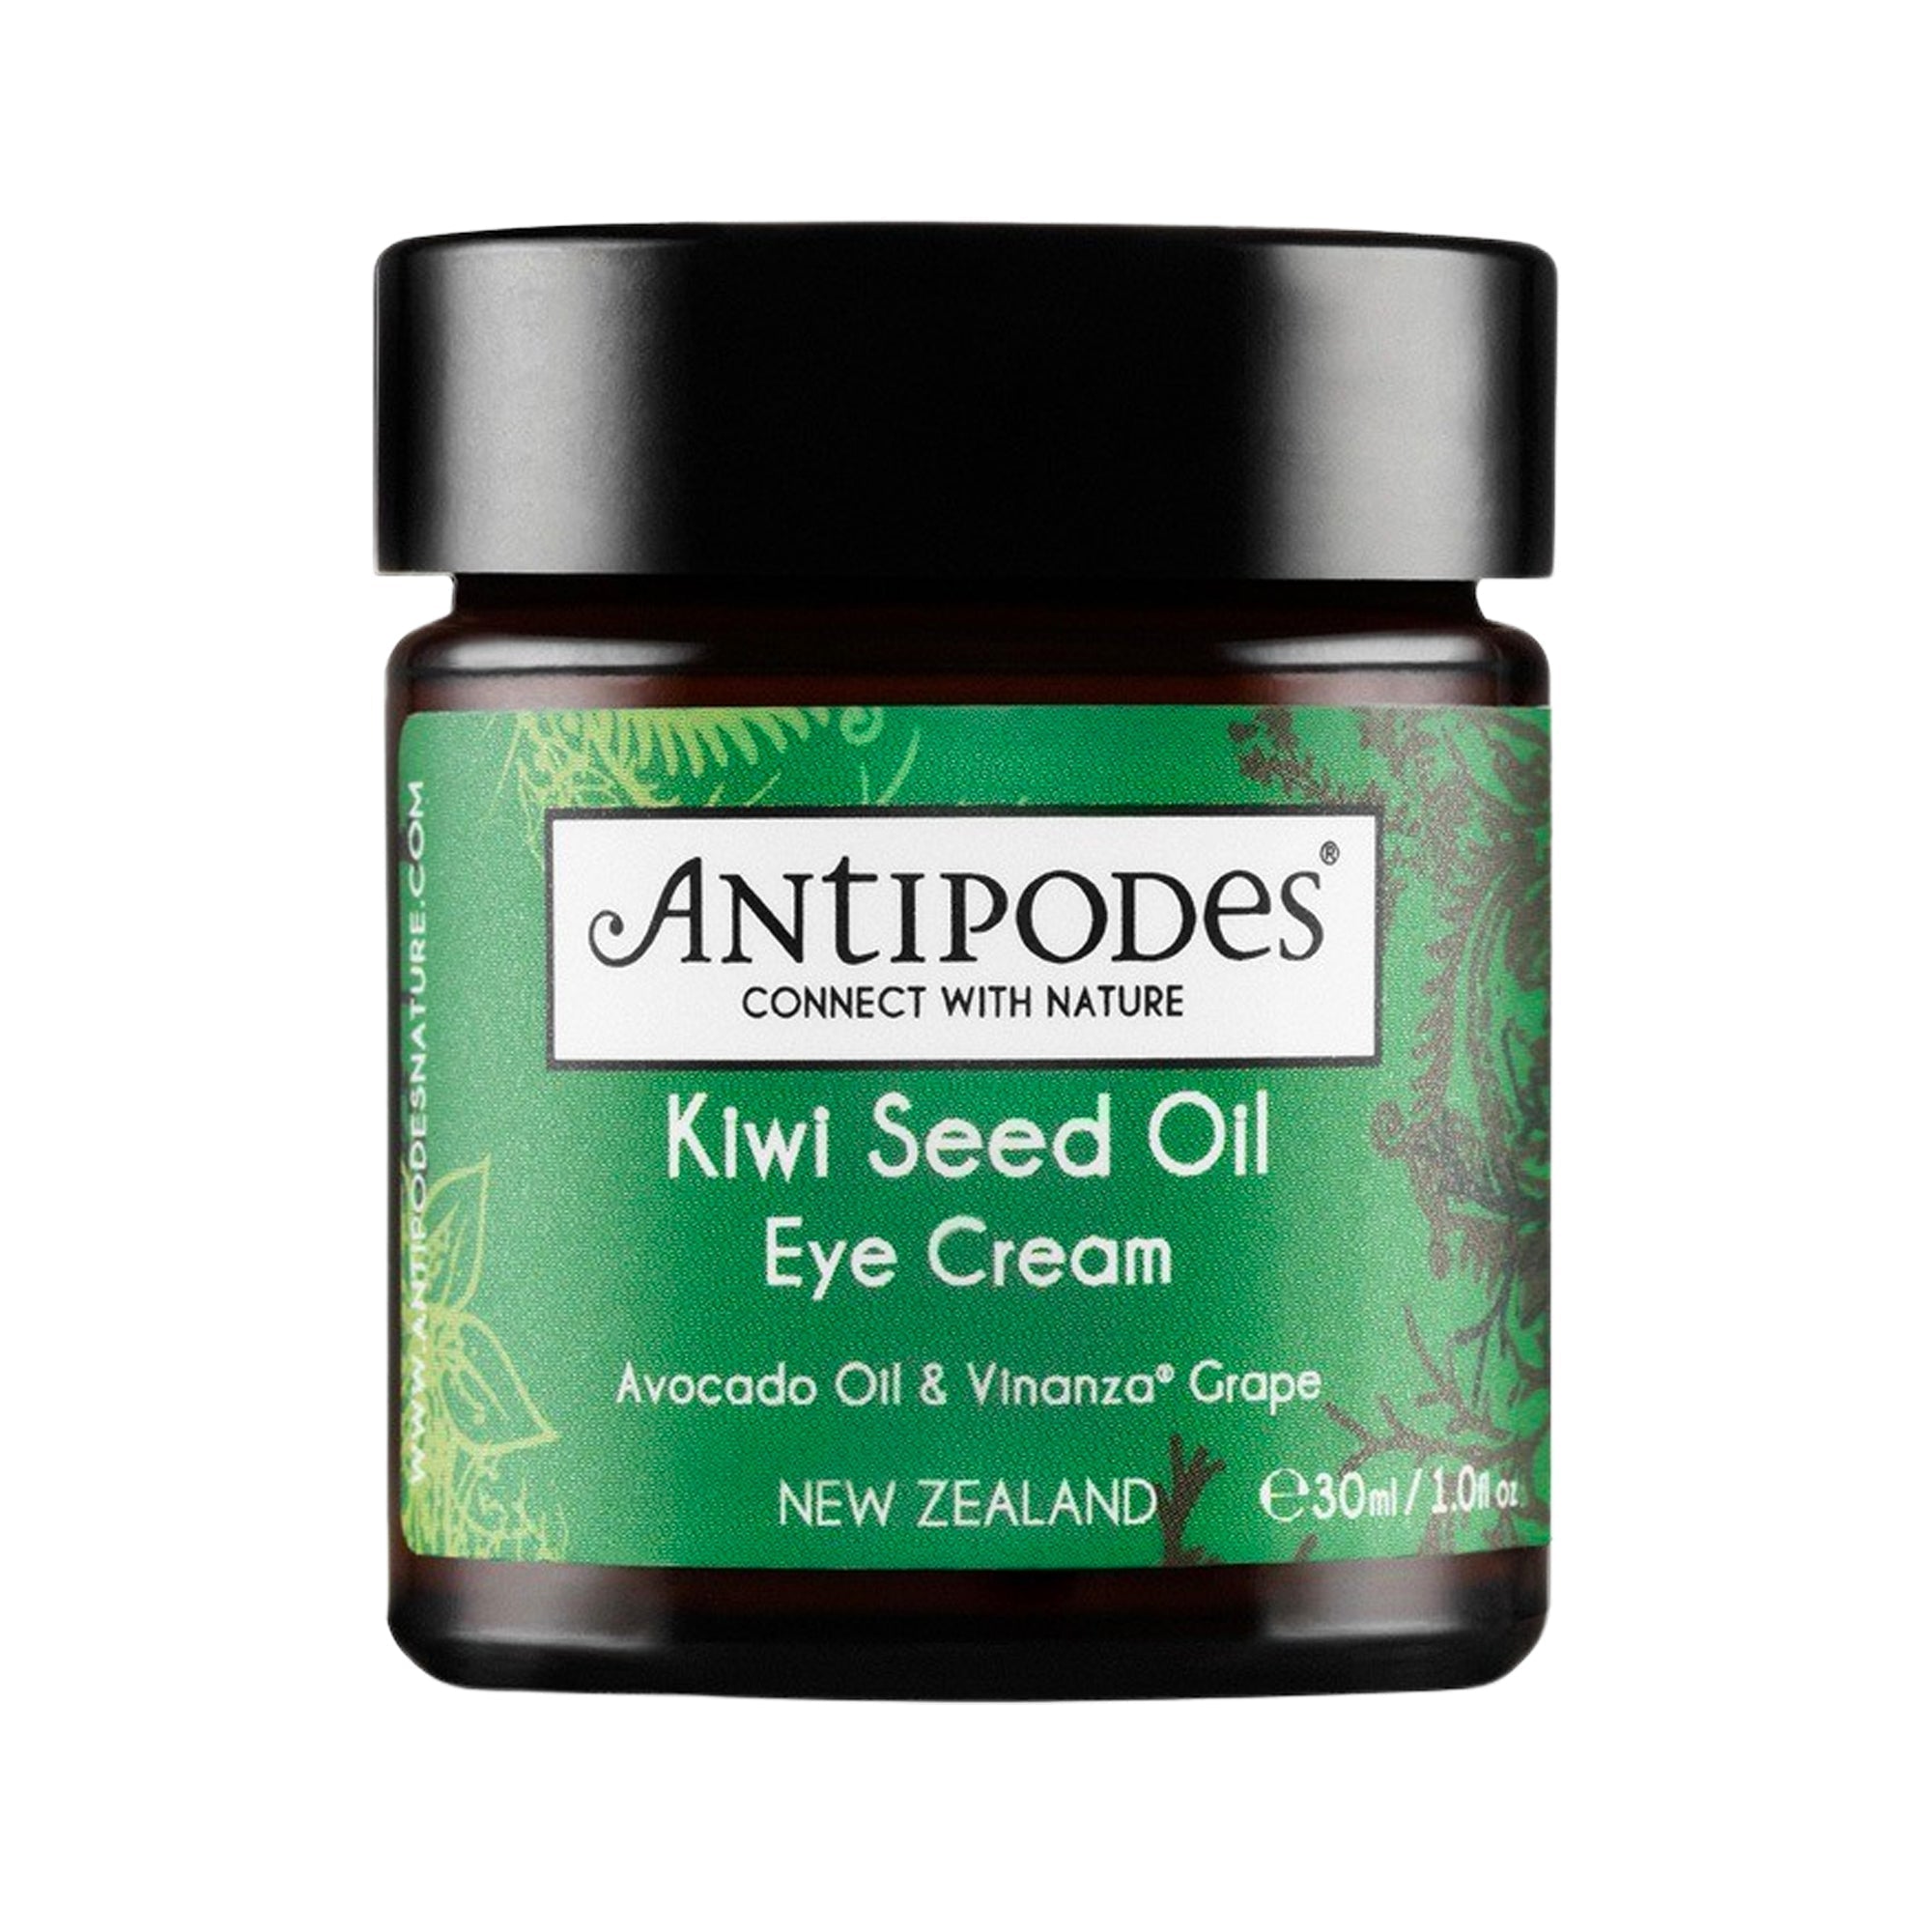 (Echantillon) Kiwi seed oil Contour des yeux à l’huile de Kiwi (Probe) Kiwisamenöl Augenkontur mit Kiwiöl - Antipodes